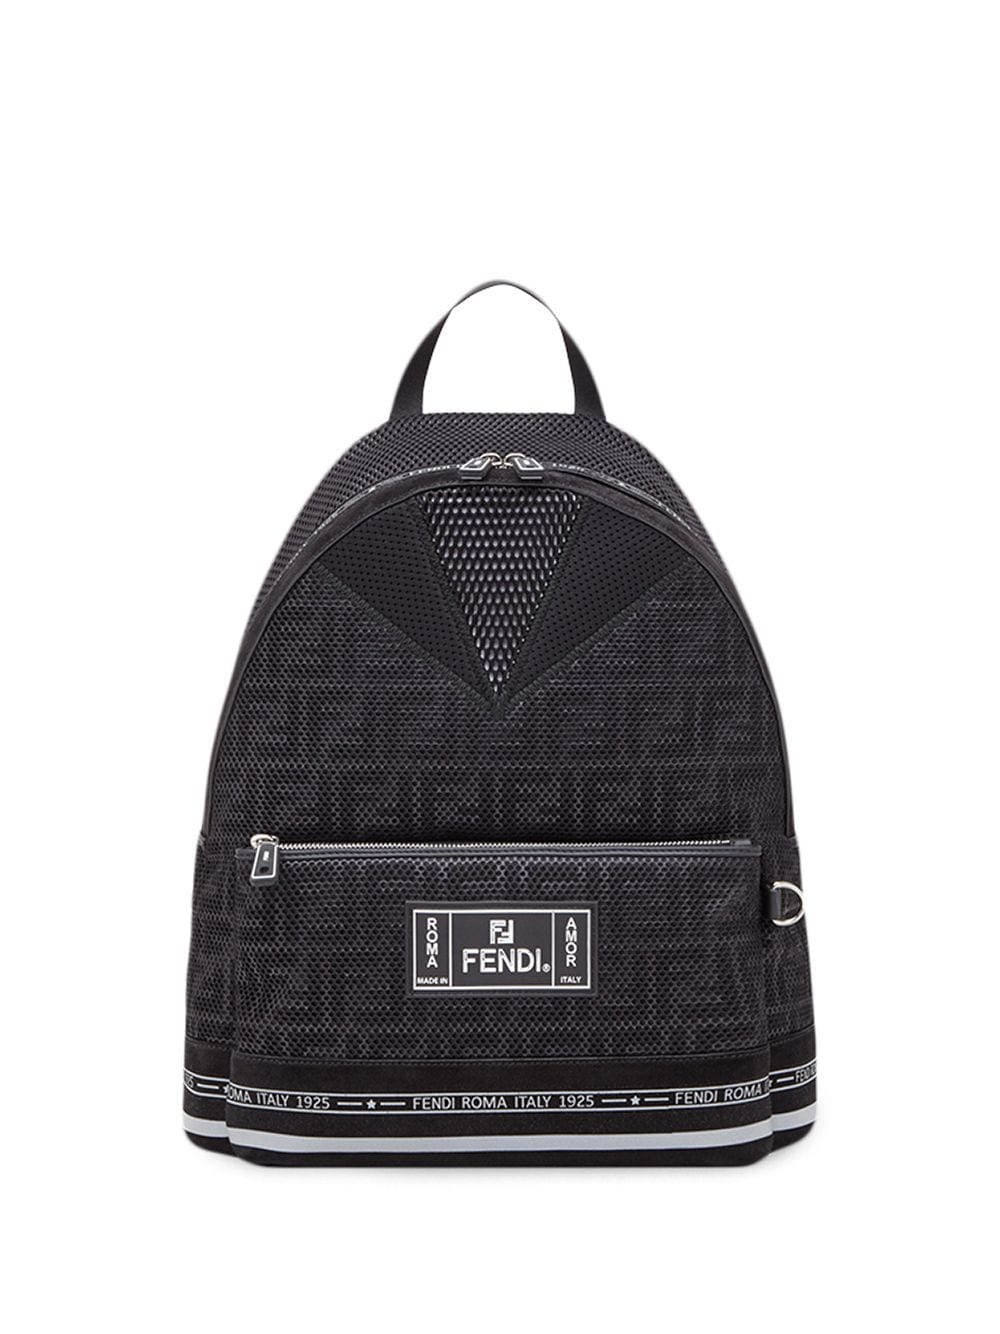 фото Fendi объемный рюкзак с логотипом ff